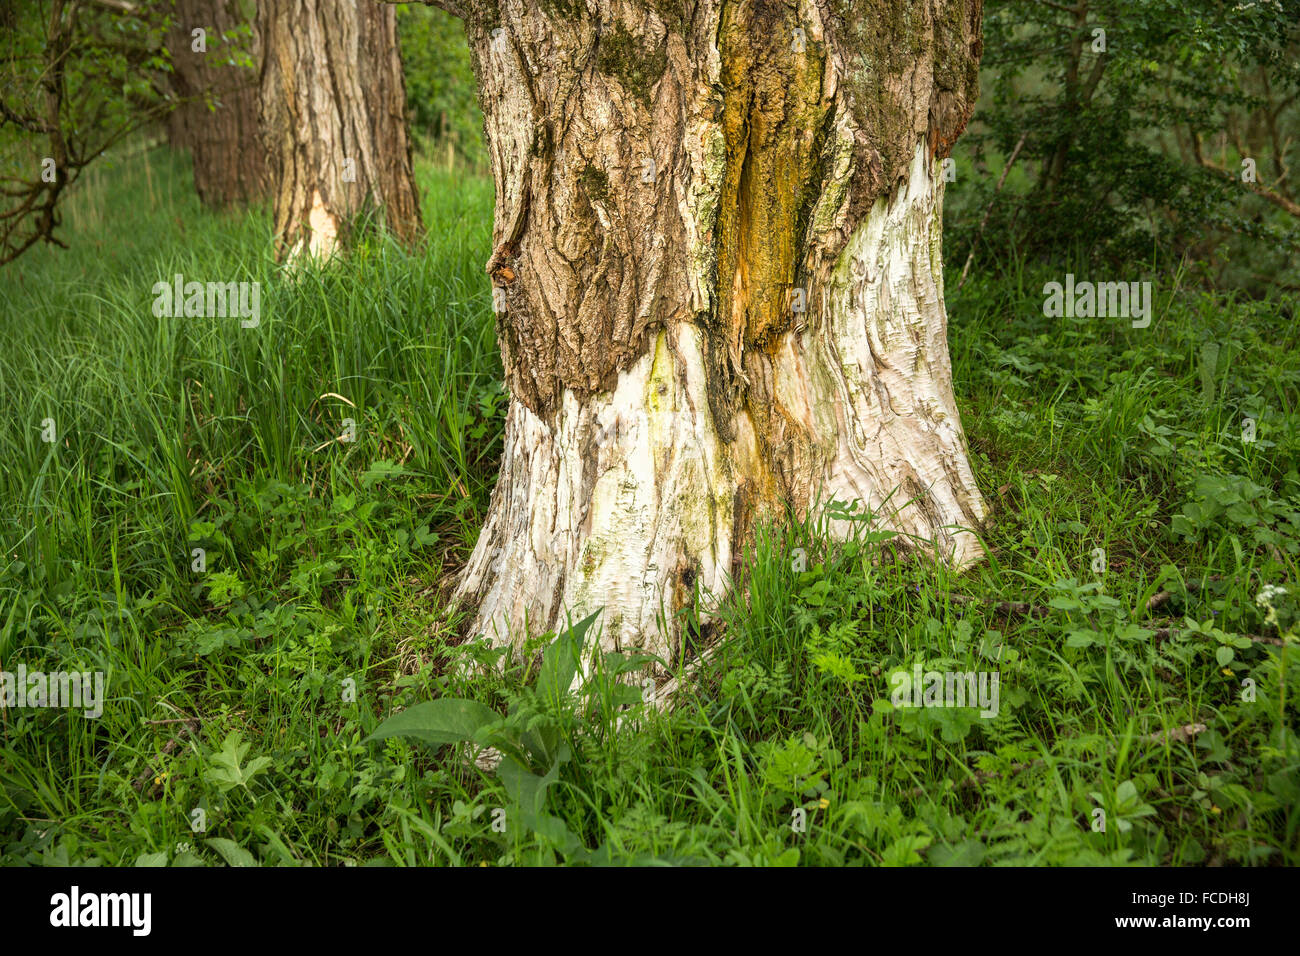 Netherlands, Werkendam, national park De Biesbosch. Bark of poplar tree, eaten by beaver Stock Photo